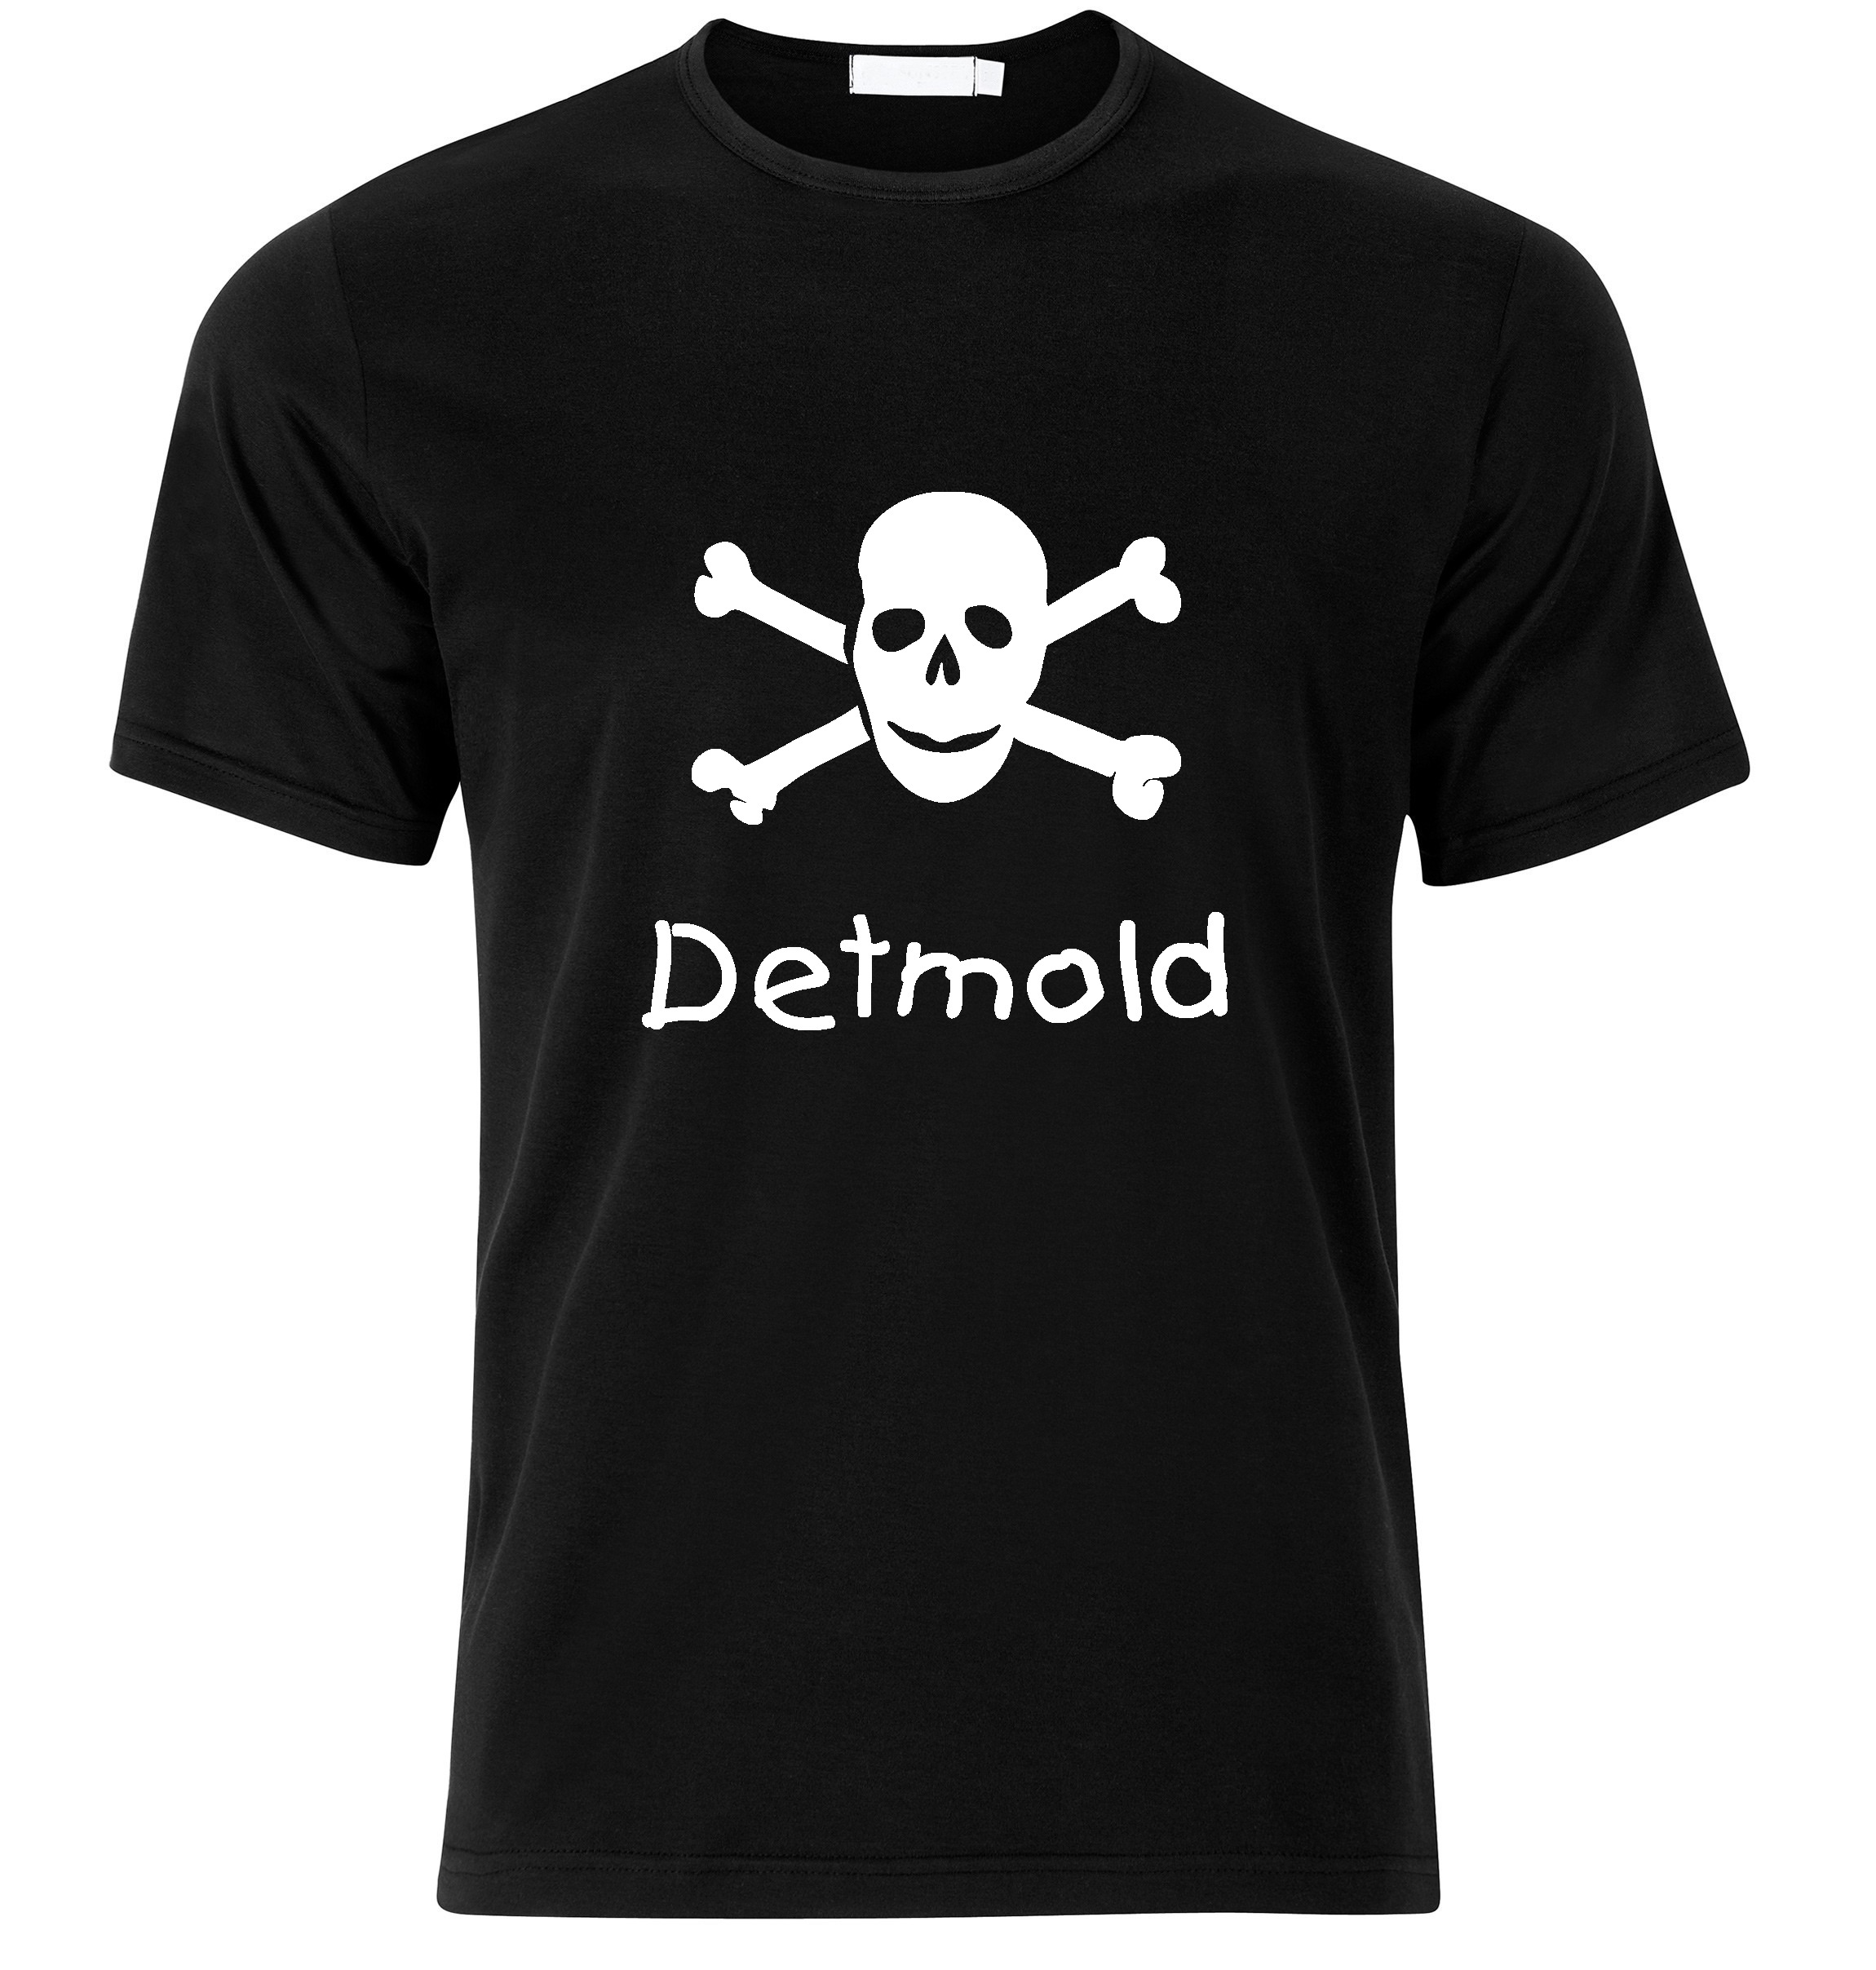 T-Shirt Detmold Jolly Roger, Totenkopf